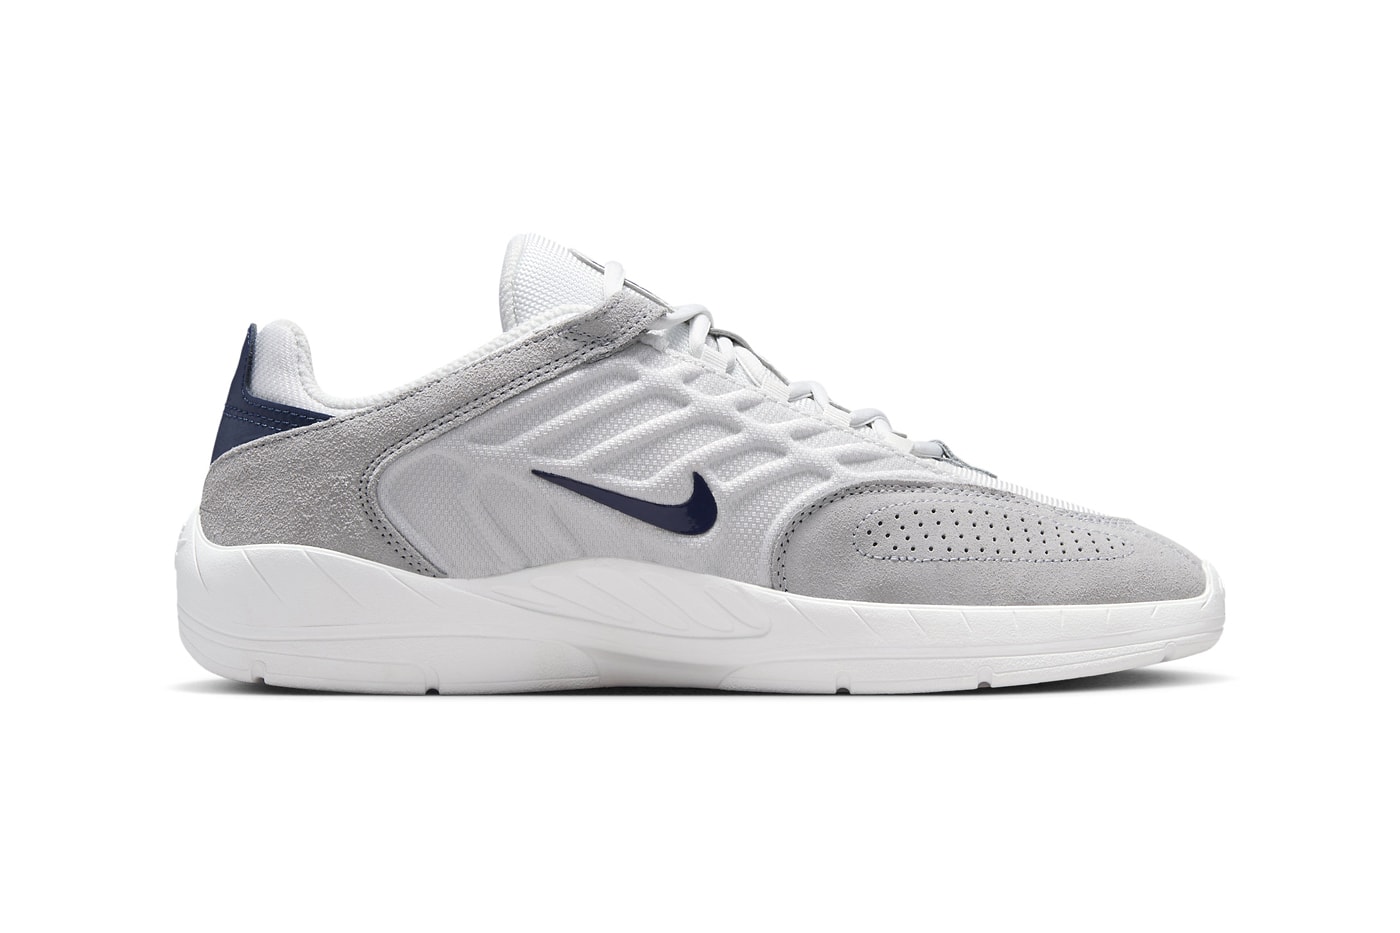 ナイキSBの新型モデル バータブレイに“ジョージタウン”が登場 Nike SB Vertebrae Surfaces in a Minimal "Georgetown" Colorway FD4691-002 Release all white grey suede mesh